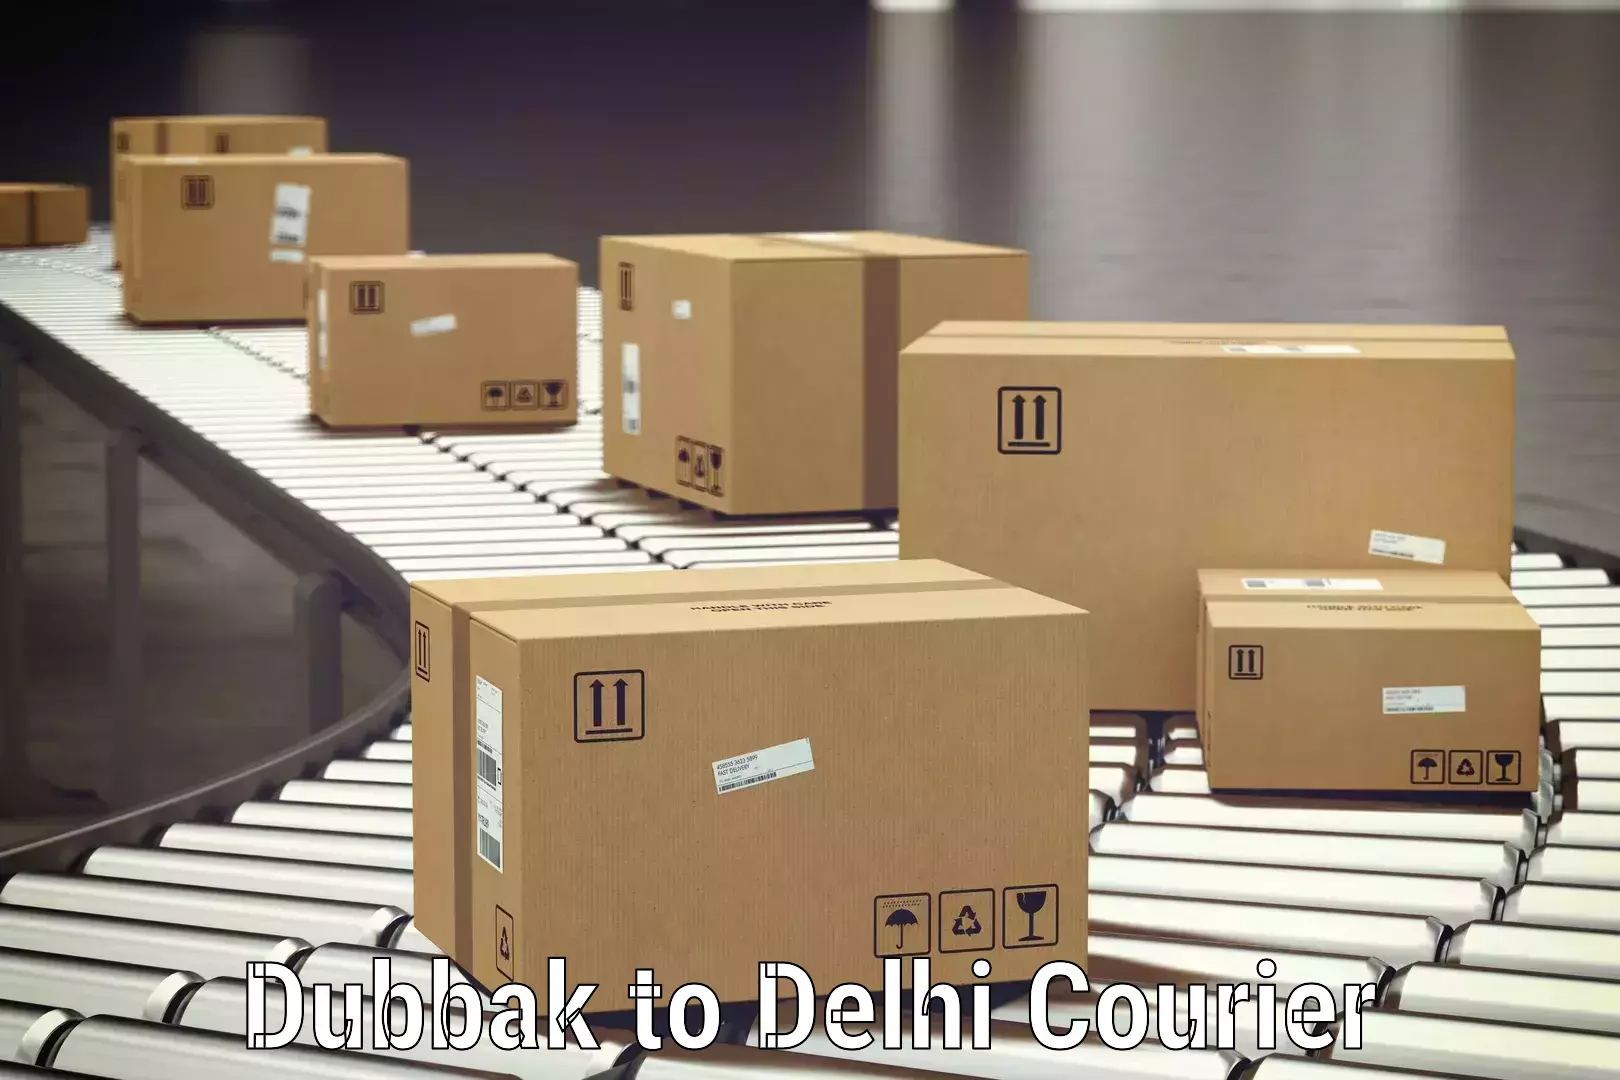 Baggage delivery optimization in Dubbak to Delhi